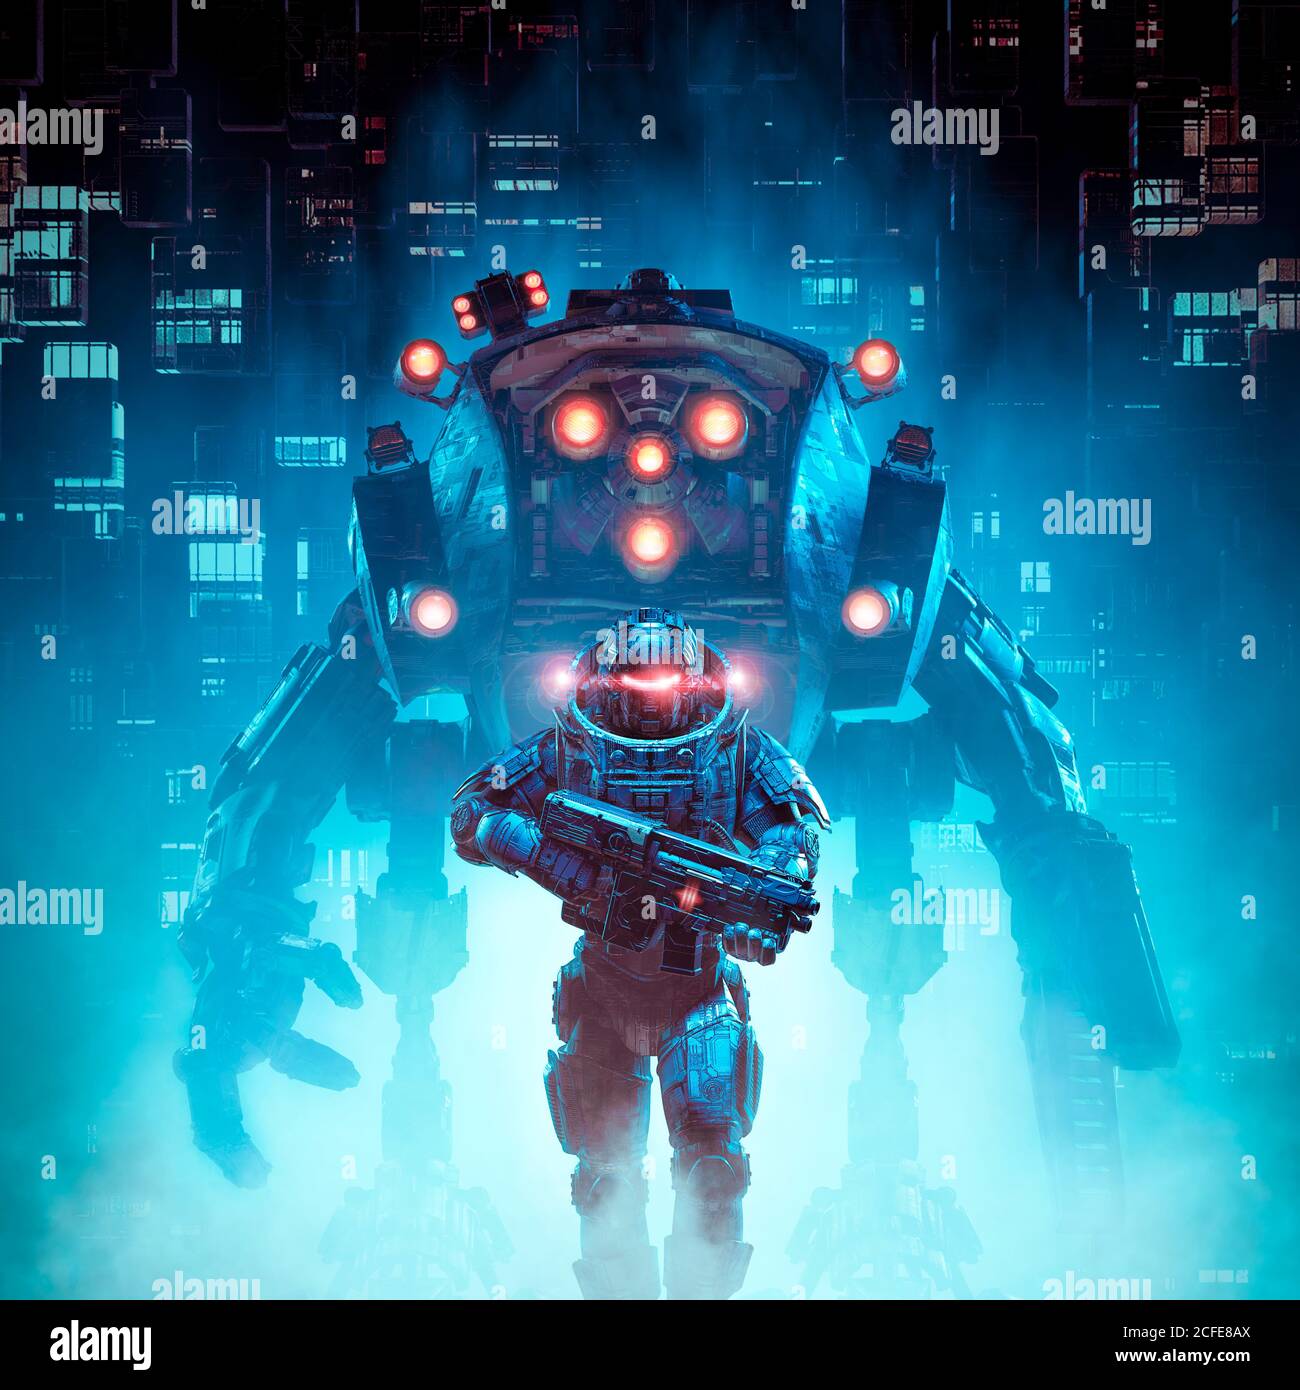 Ciberpunk soldato mecc pattuglia / illustrazione 3D di fantascienza guerriero militare cyborg pattugliando futuristica città distopica con robot gigante Foto Stock